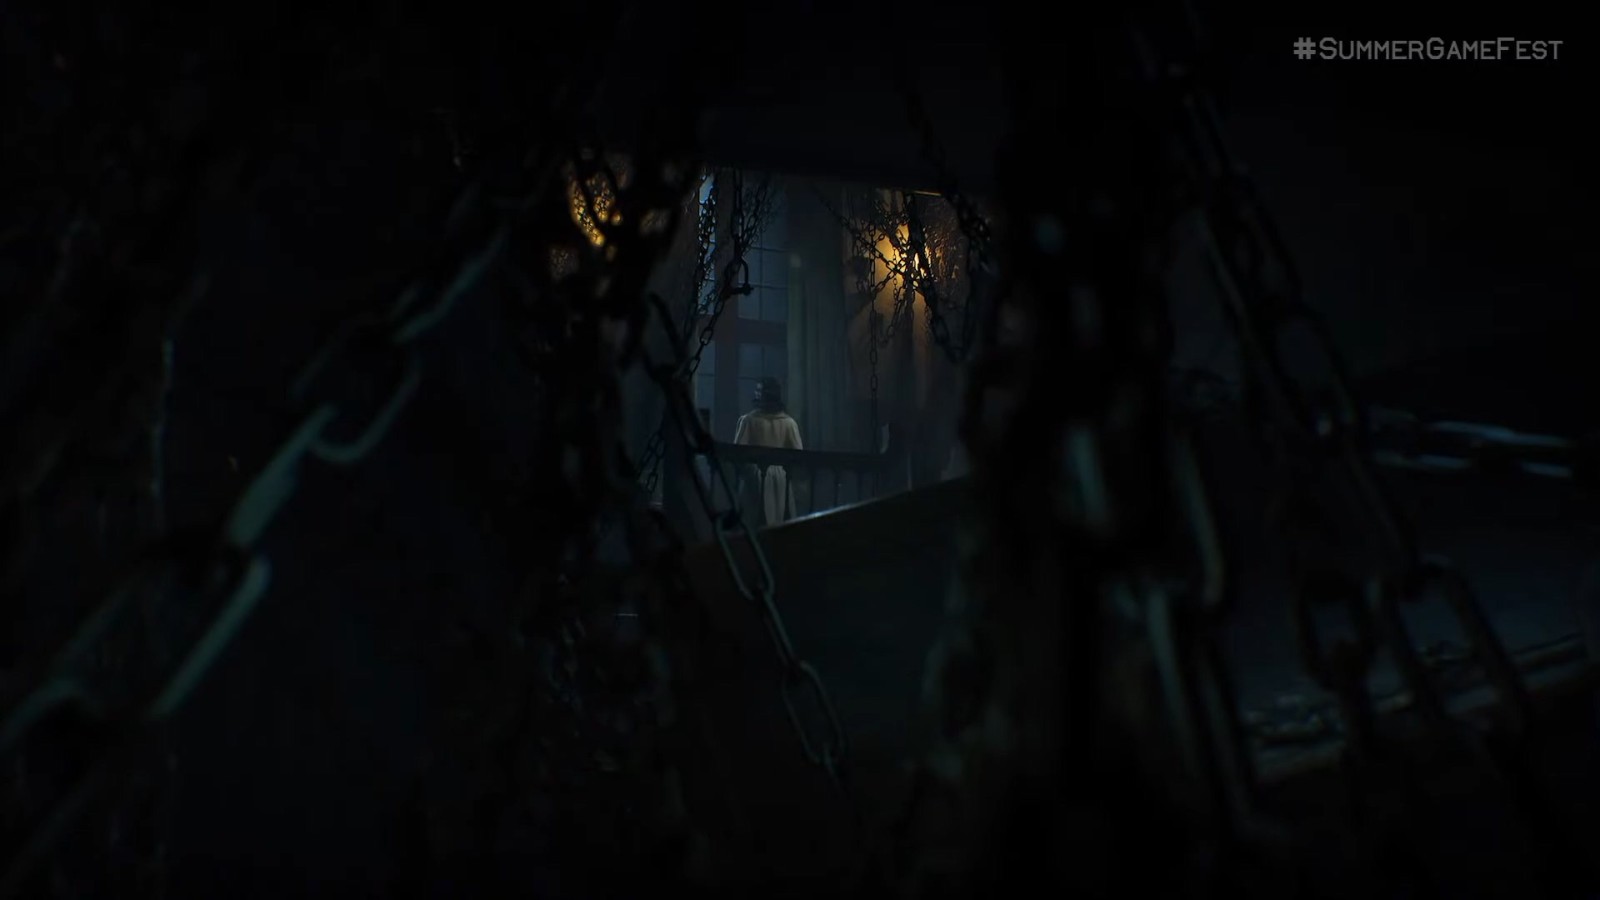 《層層恐懼3》正式公開 虛幻5引擎、2023年初發售